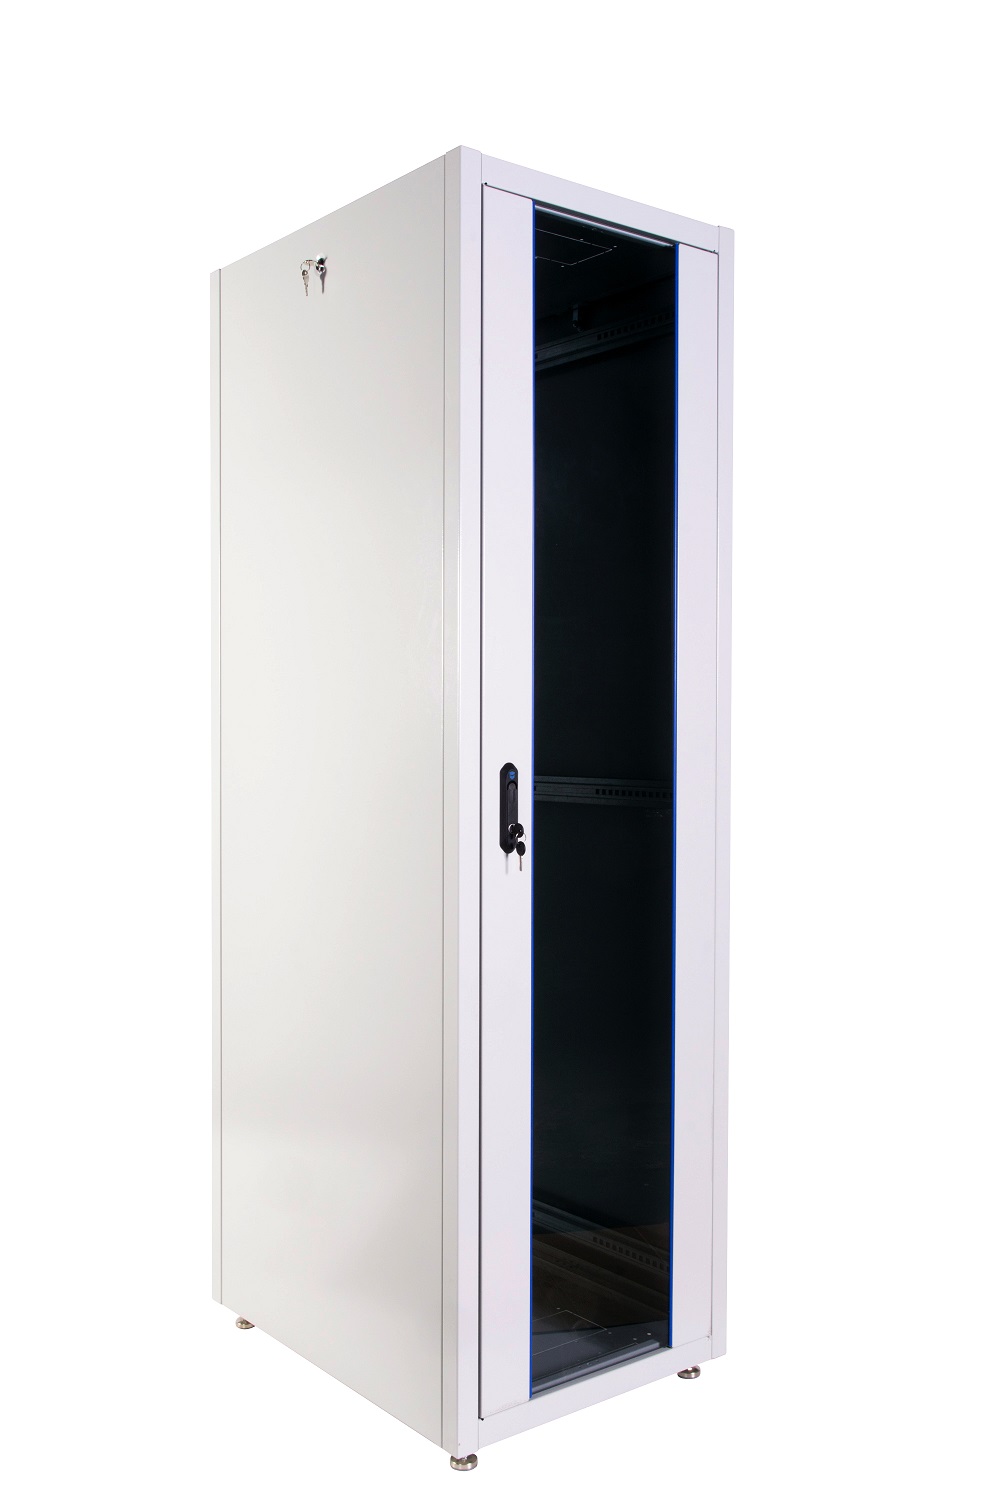  Купить Шкаф телекоммуникационный напольный ЭКОНОМ 42U (600 × 600) дверь стекло, дверь металл